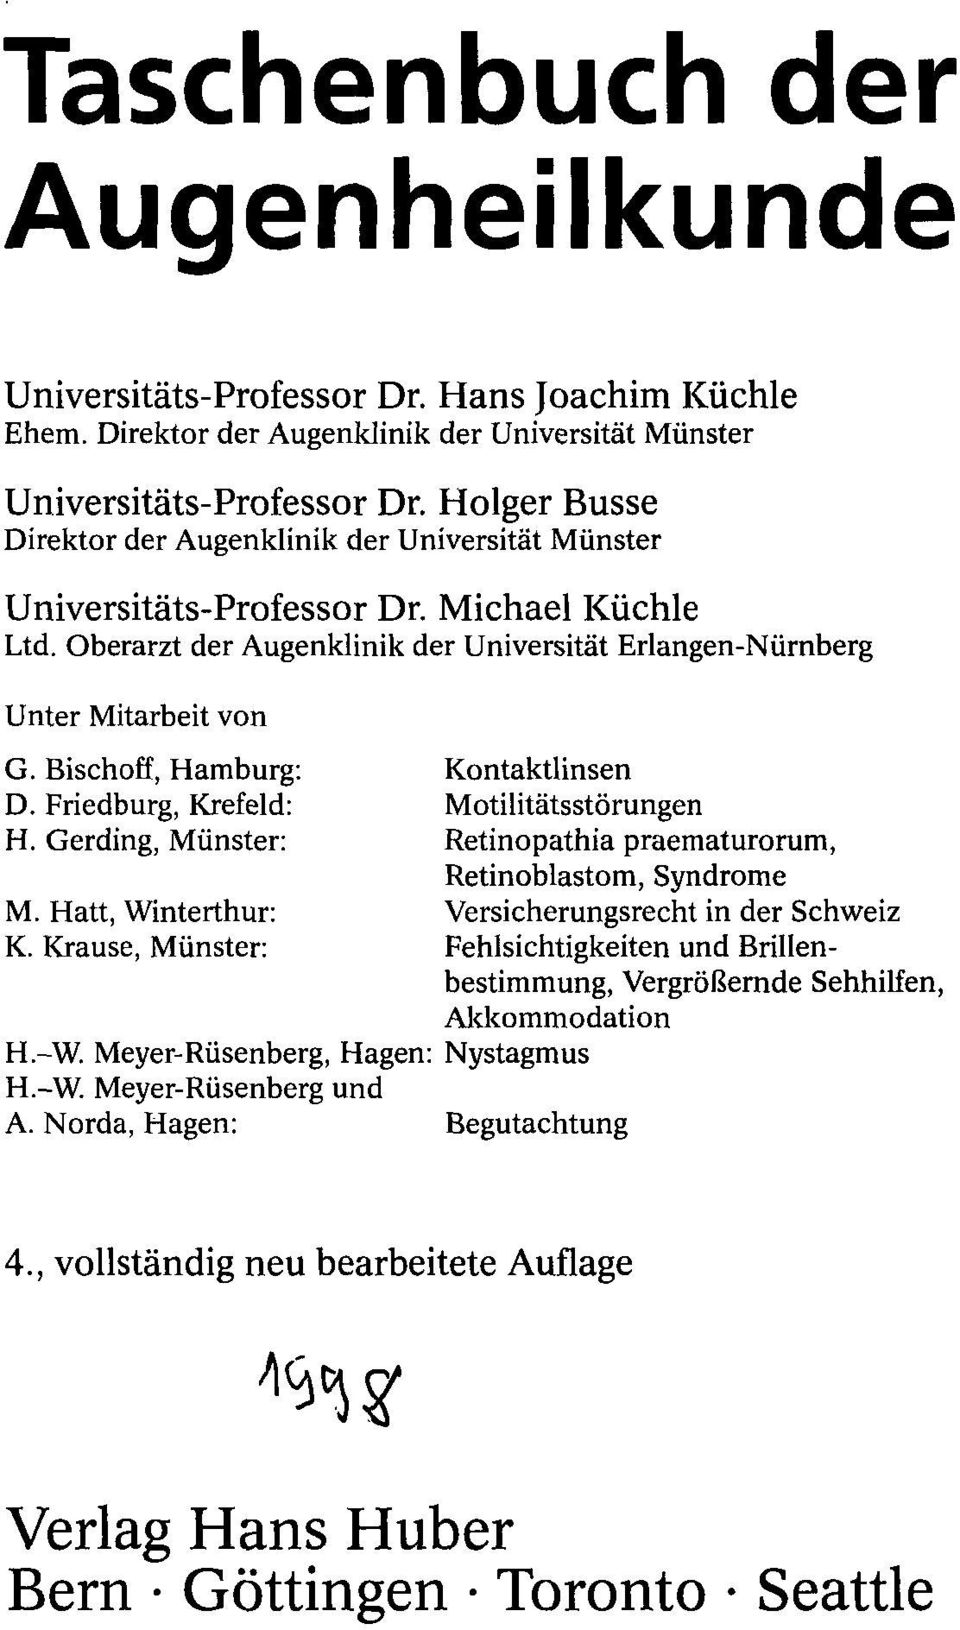 Bischoff, Hamburg: Kontaktlinsen D. Friedburg, Krefeld: Motilitätsstörungen H. Gerding, Münster: Retinopathia praematurorum, Retinoblastom, Syndrome M.